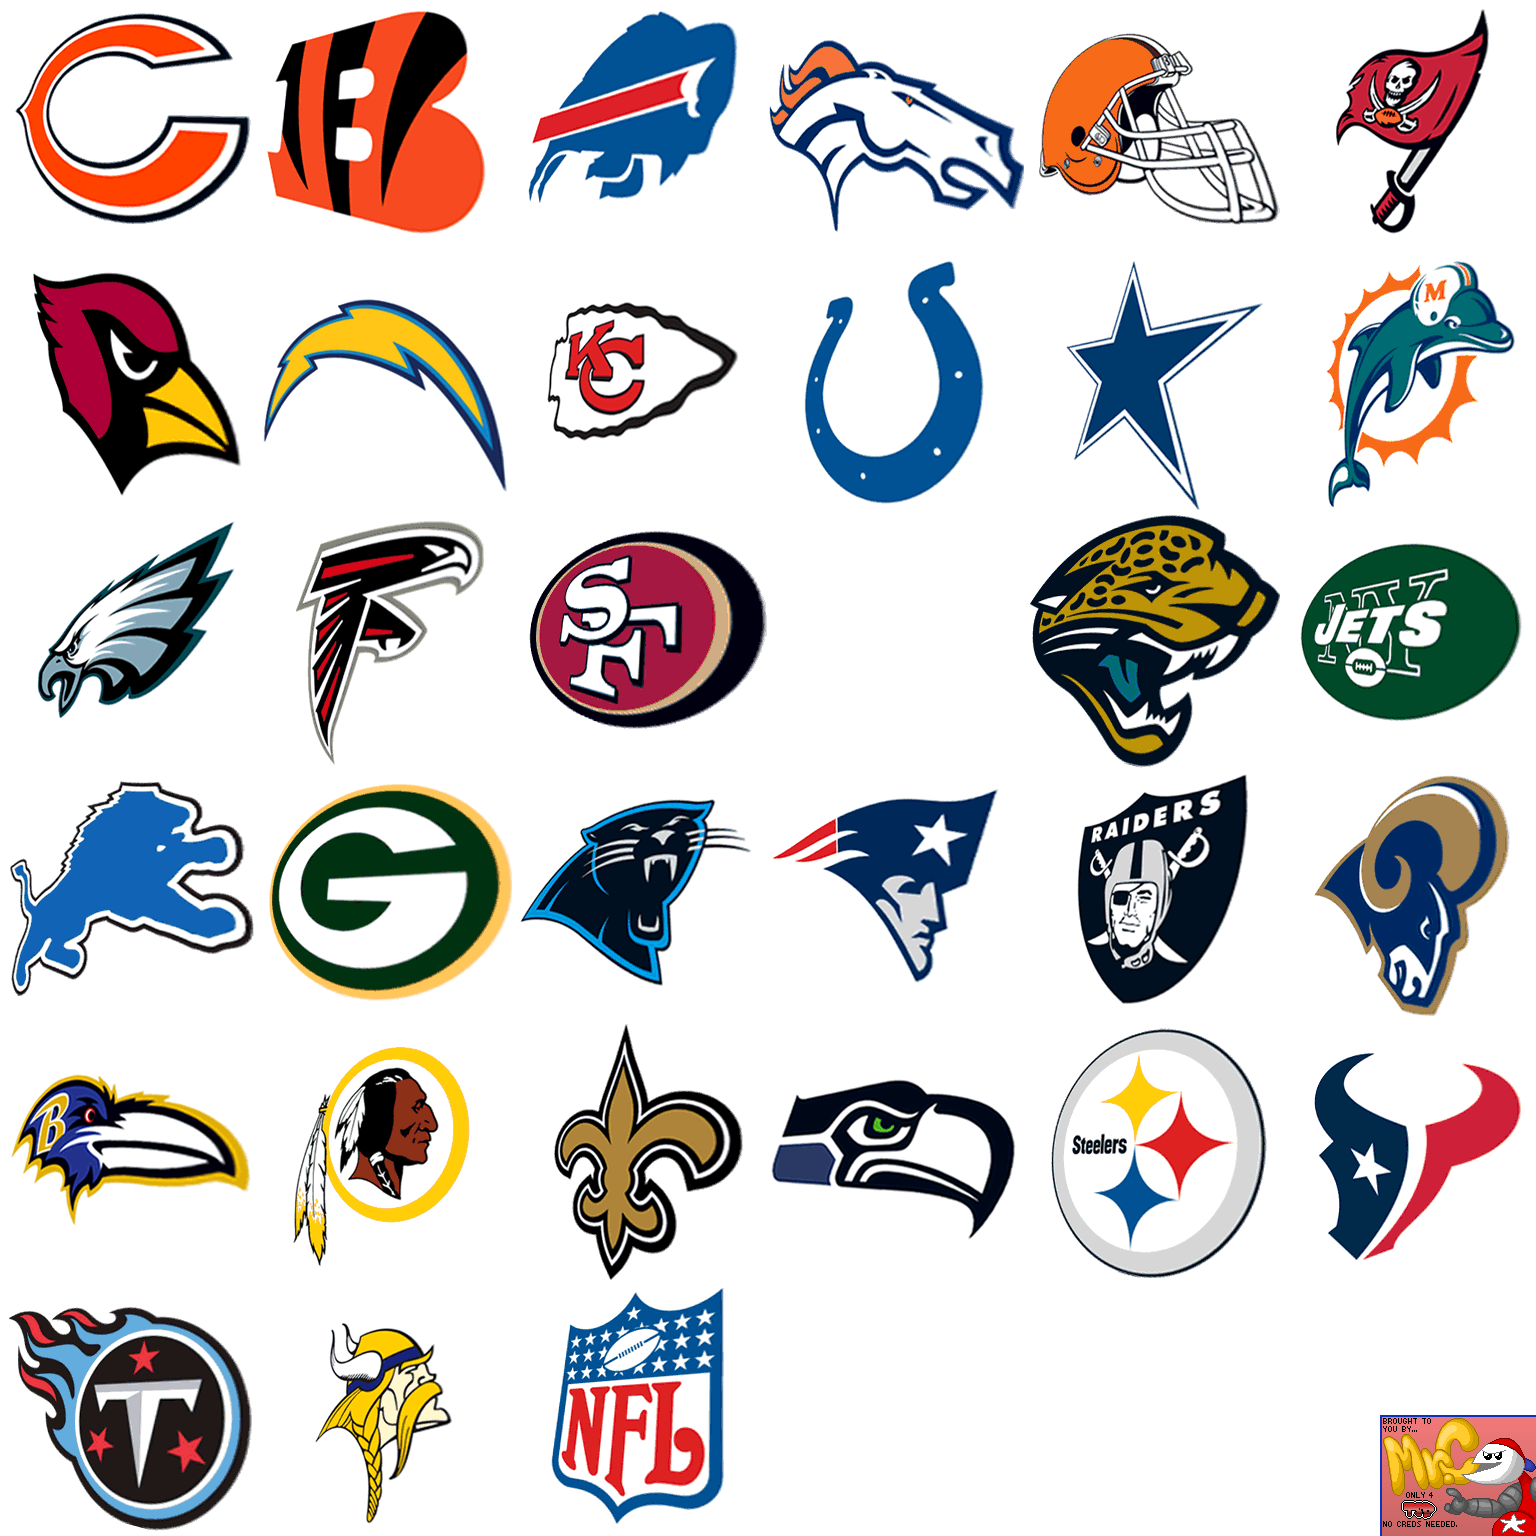 Madden NFL 08 - Team Logos (Main Menu)